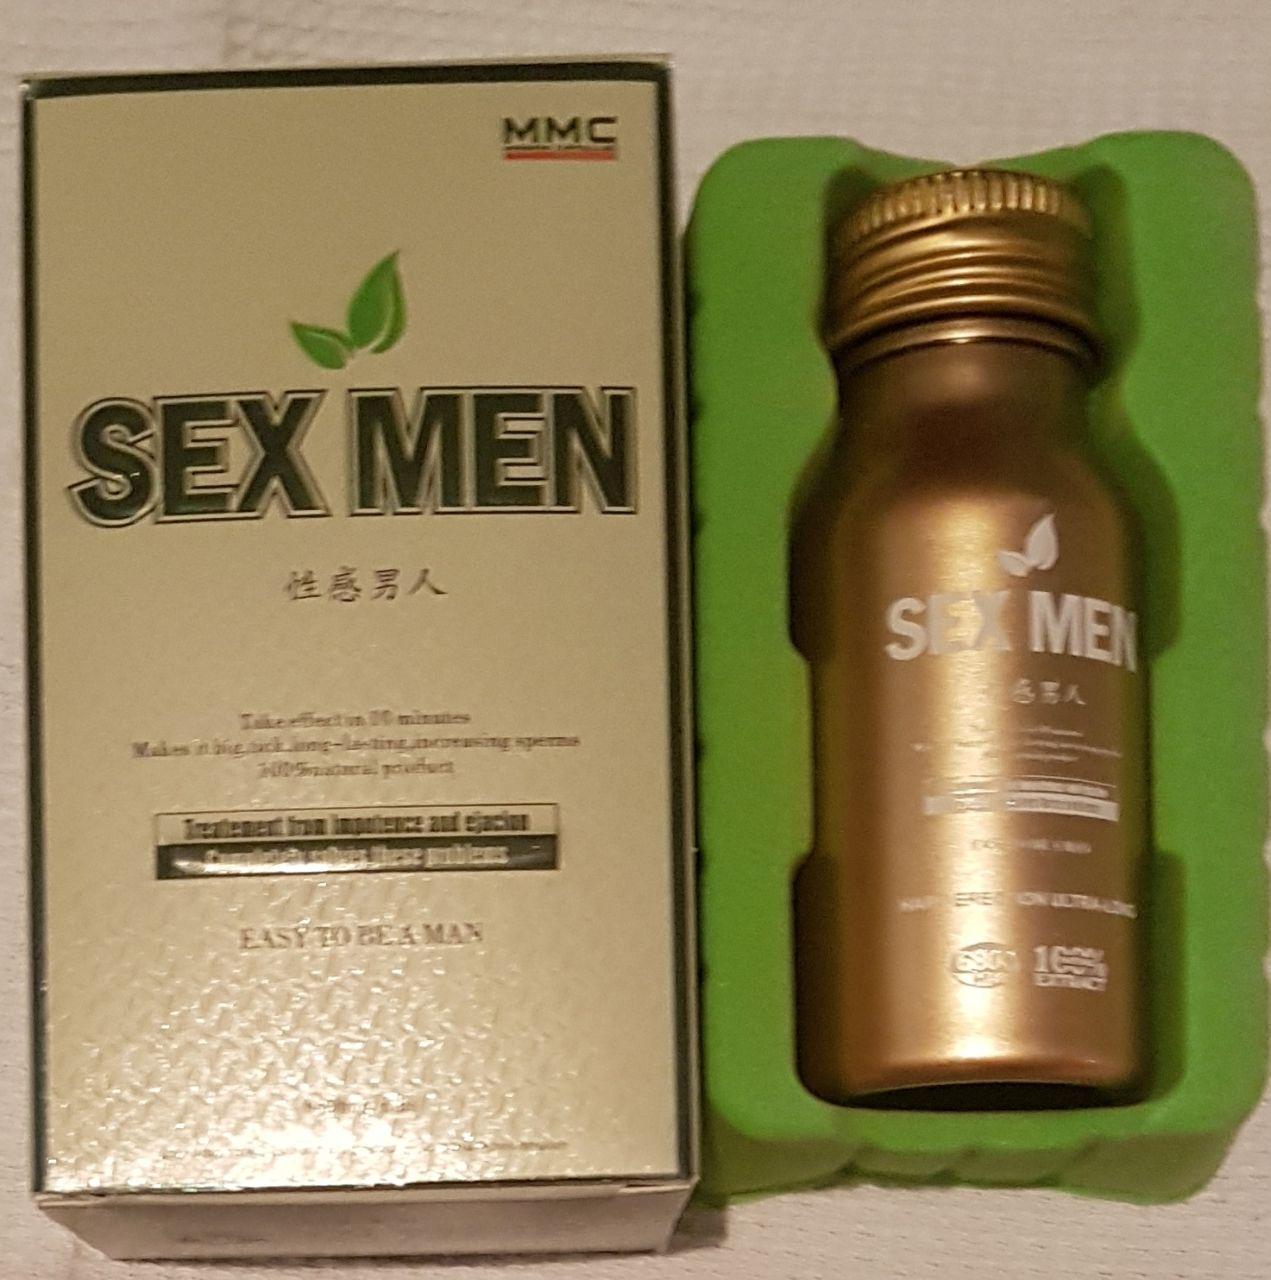 SEX MEN Препарат для потенции